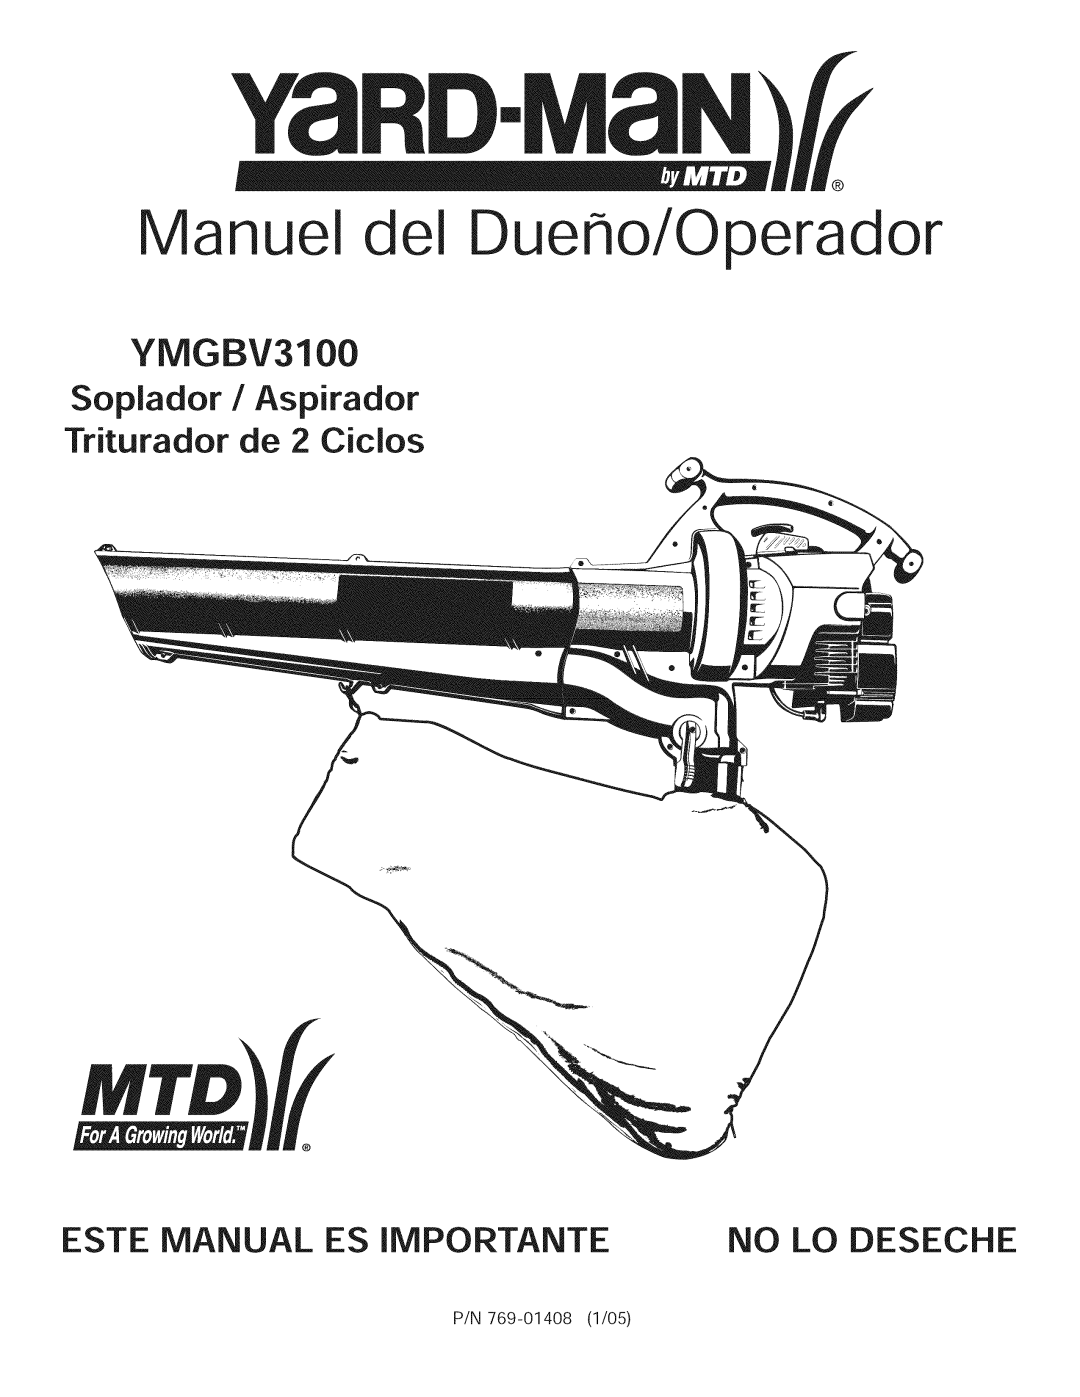 Yard-Man 769.01408 manual Manuel Dueffo/Operador, Soplador / Aspirador Triturador de 2 Cicios, No Lo Deseche, YMGBV3100 